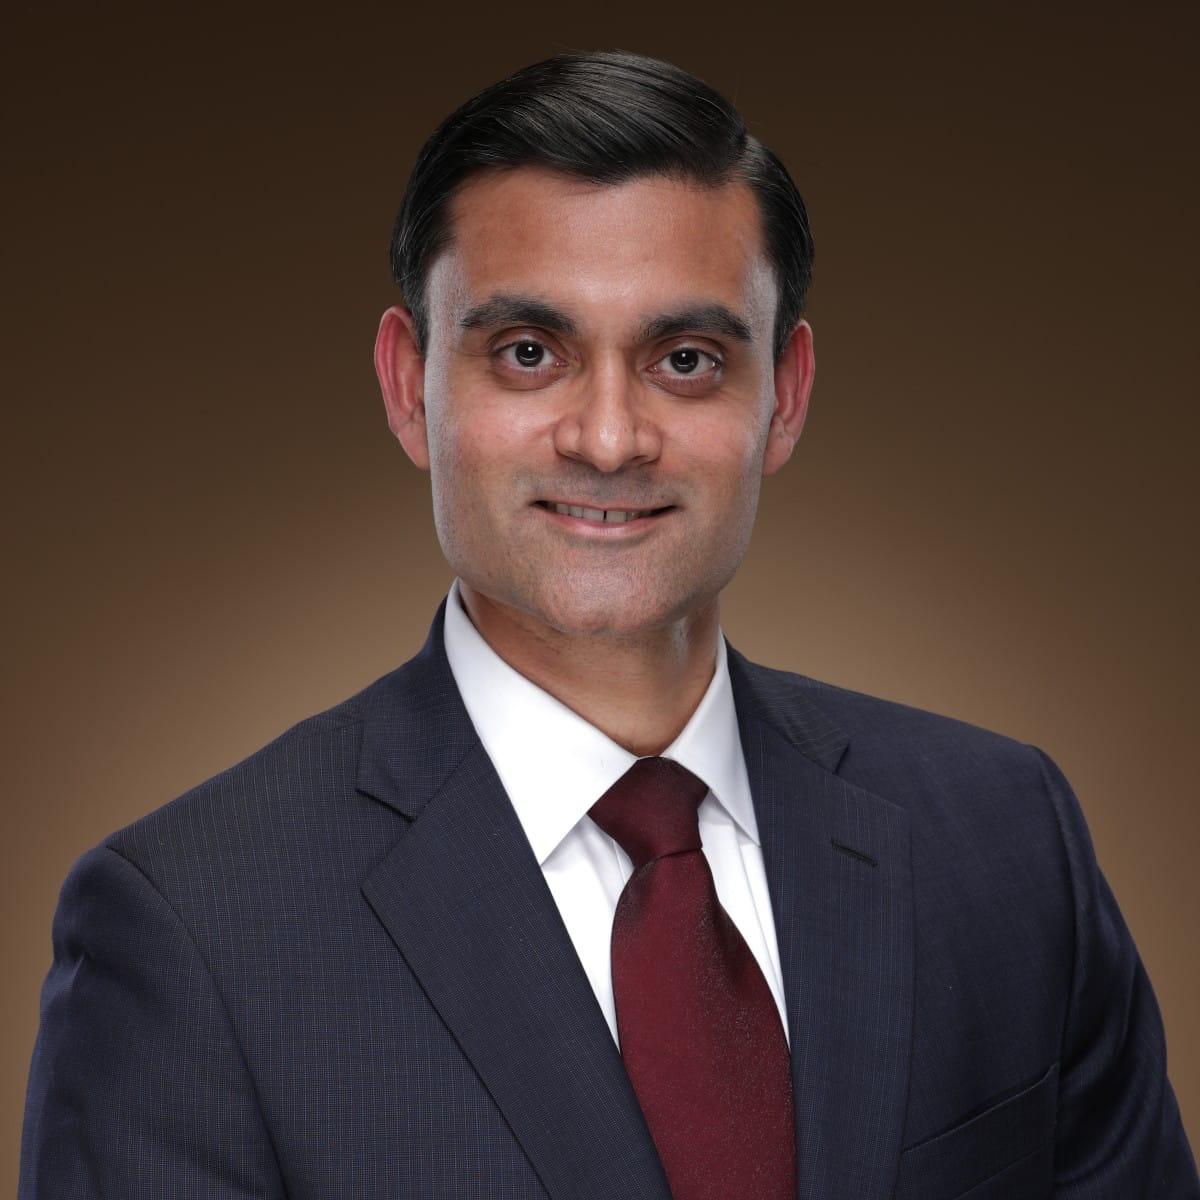 A friendly headshot of Nirav Patel, MD